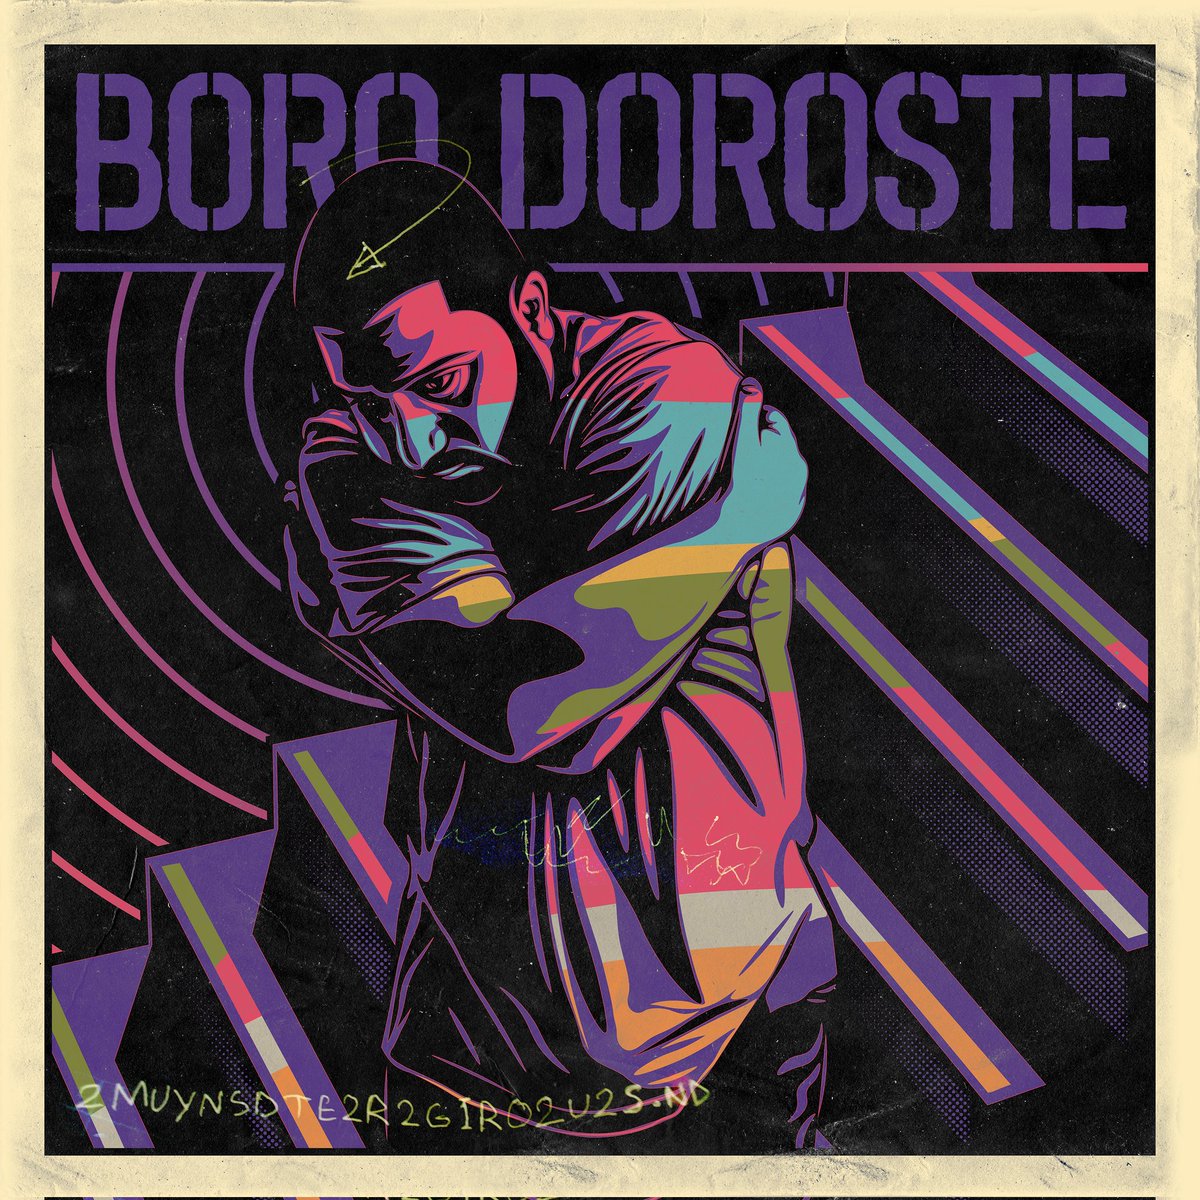 Boro Doroste is available ...
soundcloud.com/soheil-sorb/bo…
open.spotify.com/album/1PMl3fBs…